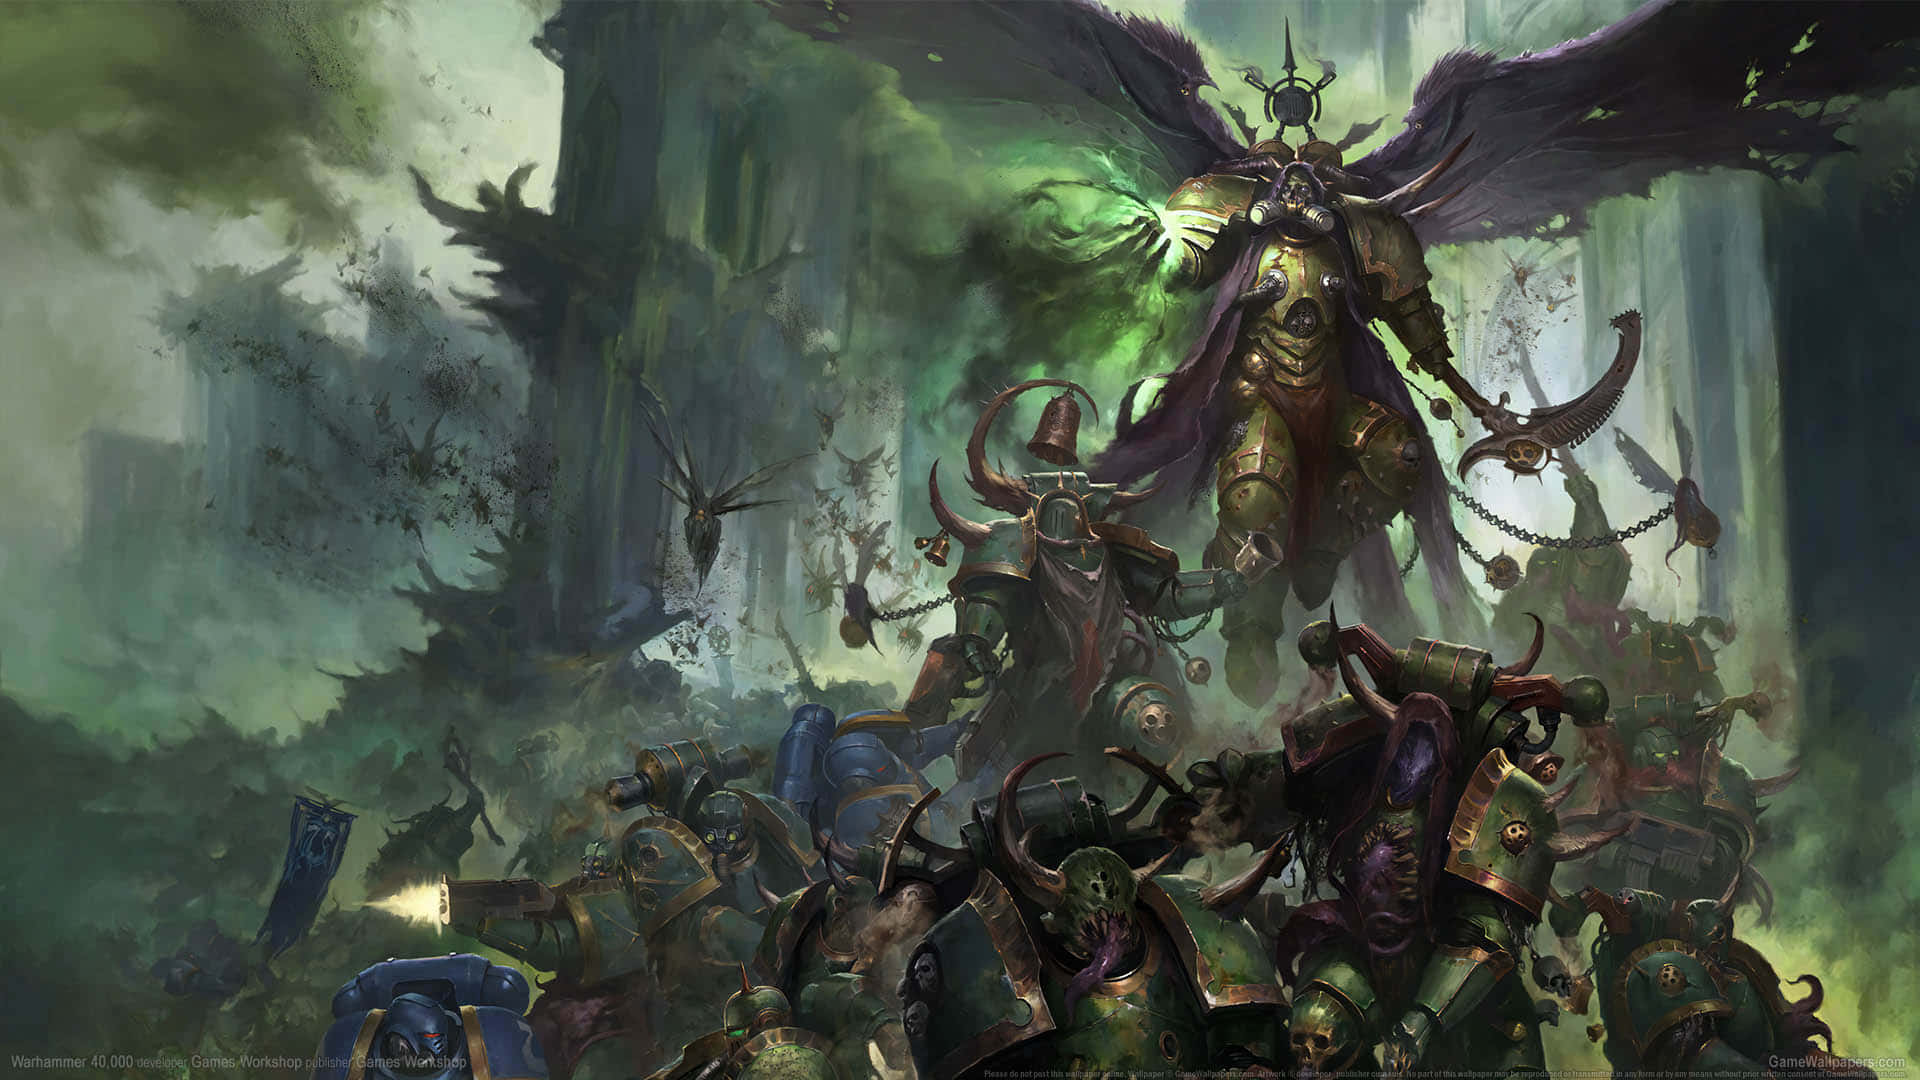 Blæs dine fjender væk i det mytiske Warhammer 4k-verden. Wallpaper